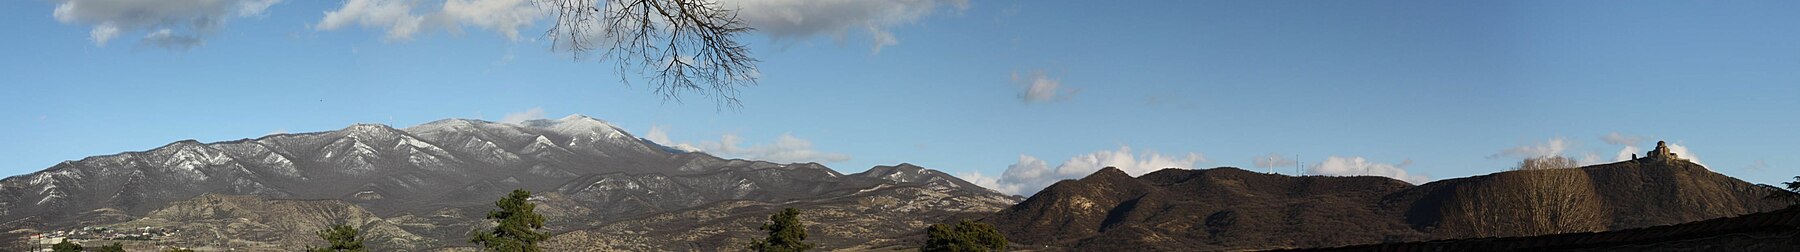 Mtsheta dağları.jpg